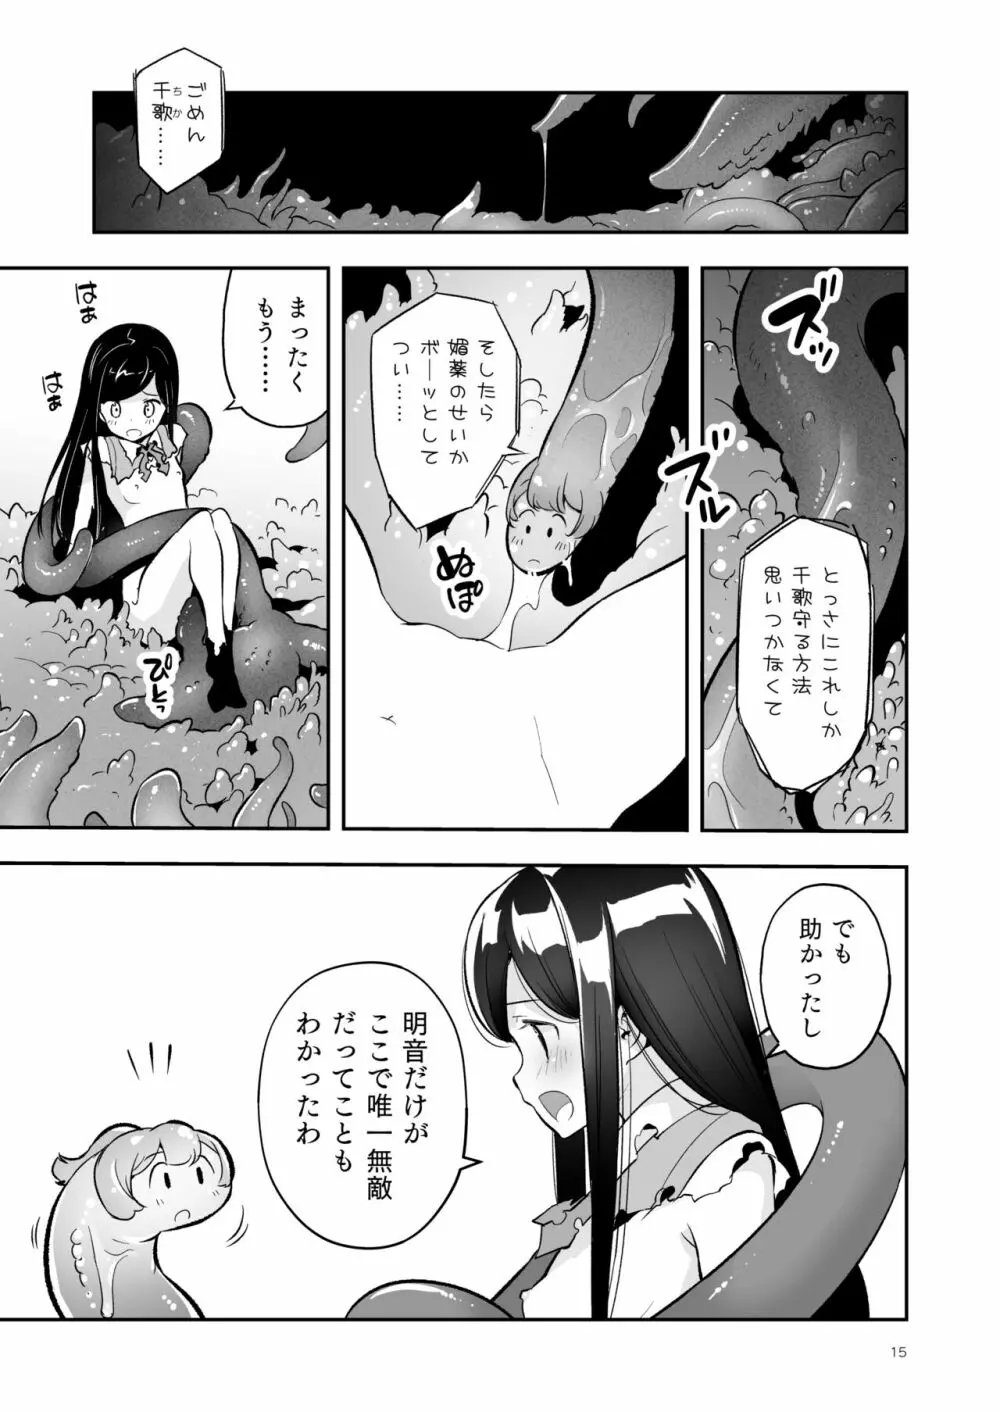 そらとぶうさぎ4 among the tentacles 15ページ